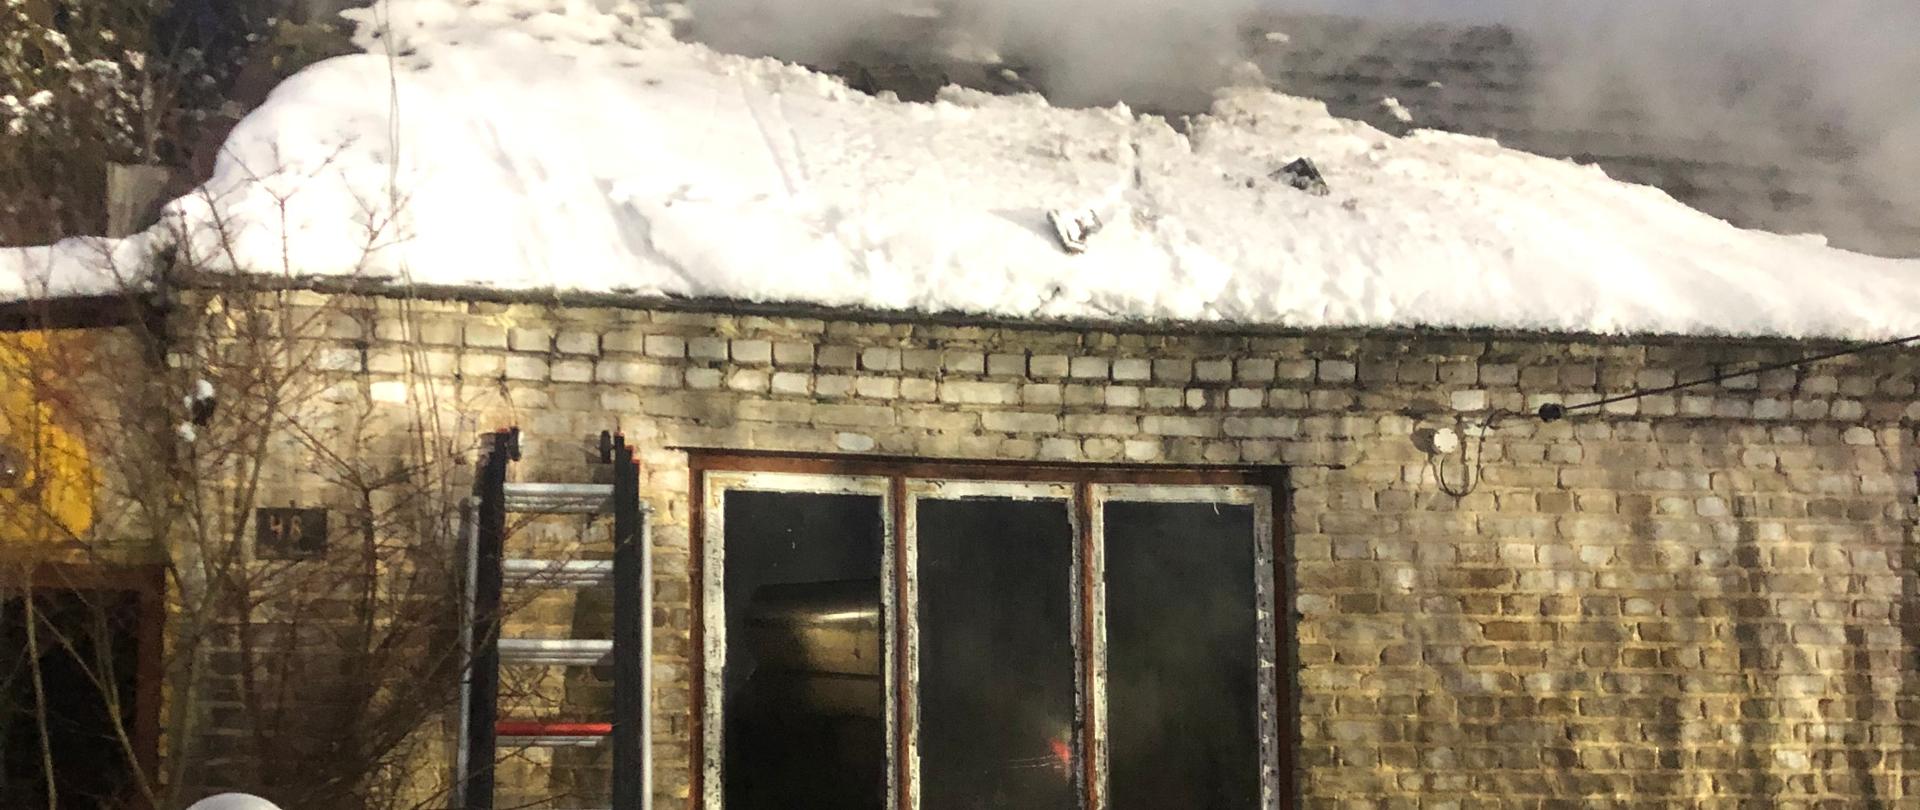 Strażak na pierwszym planie przy drabinie. Drabina jest oparta o budynek w którym doszło do pożaru. Dach budynku pokryty jest śniegiem. Z dachu wydobywa się dym. Zdjęcie w porze wieczornej.